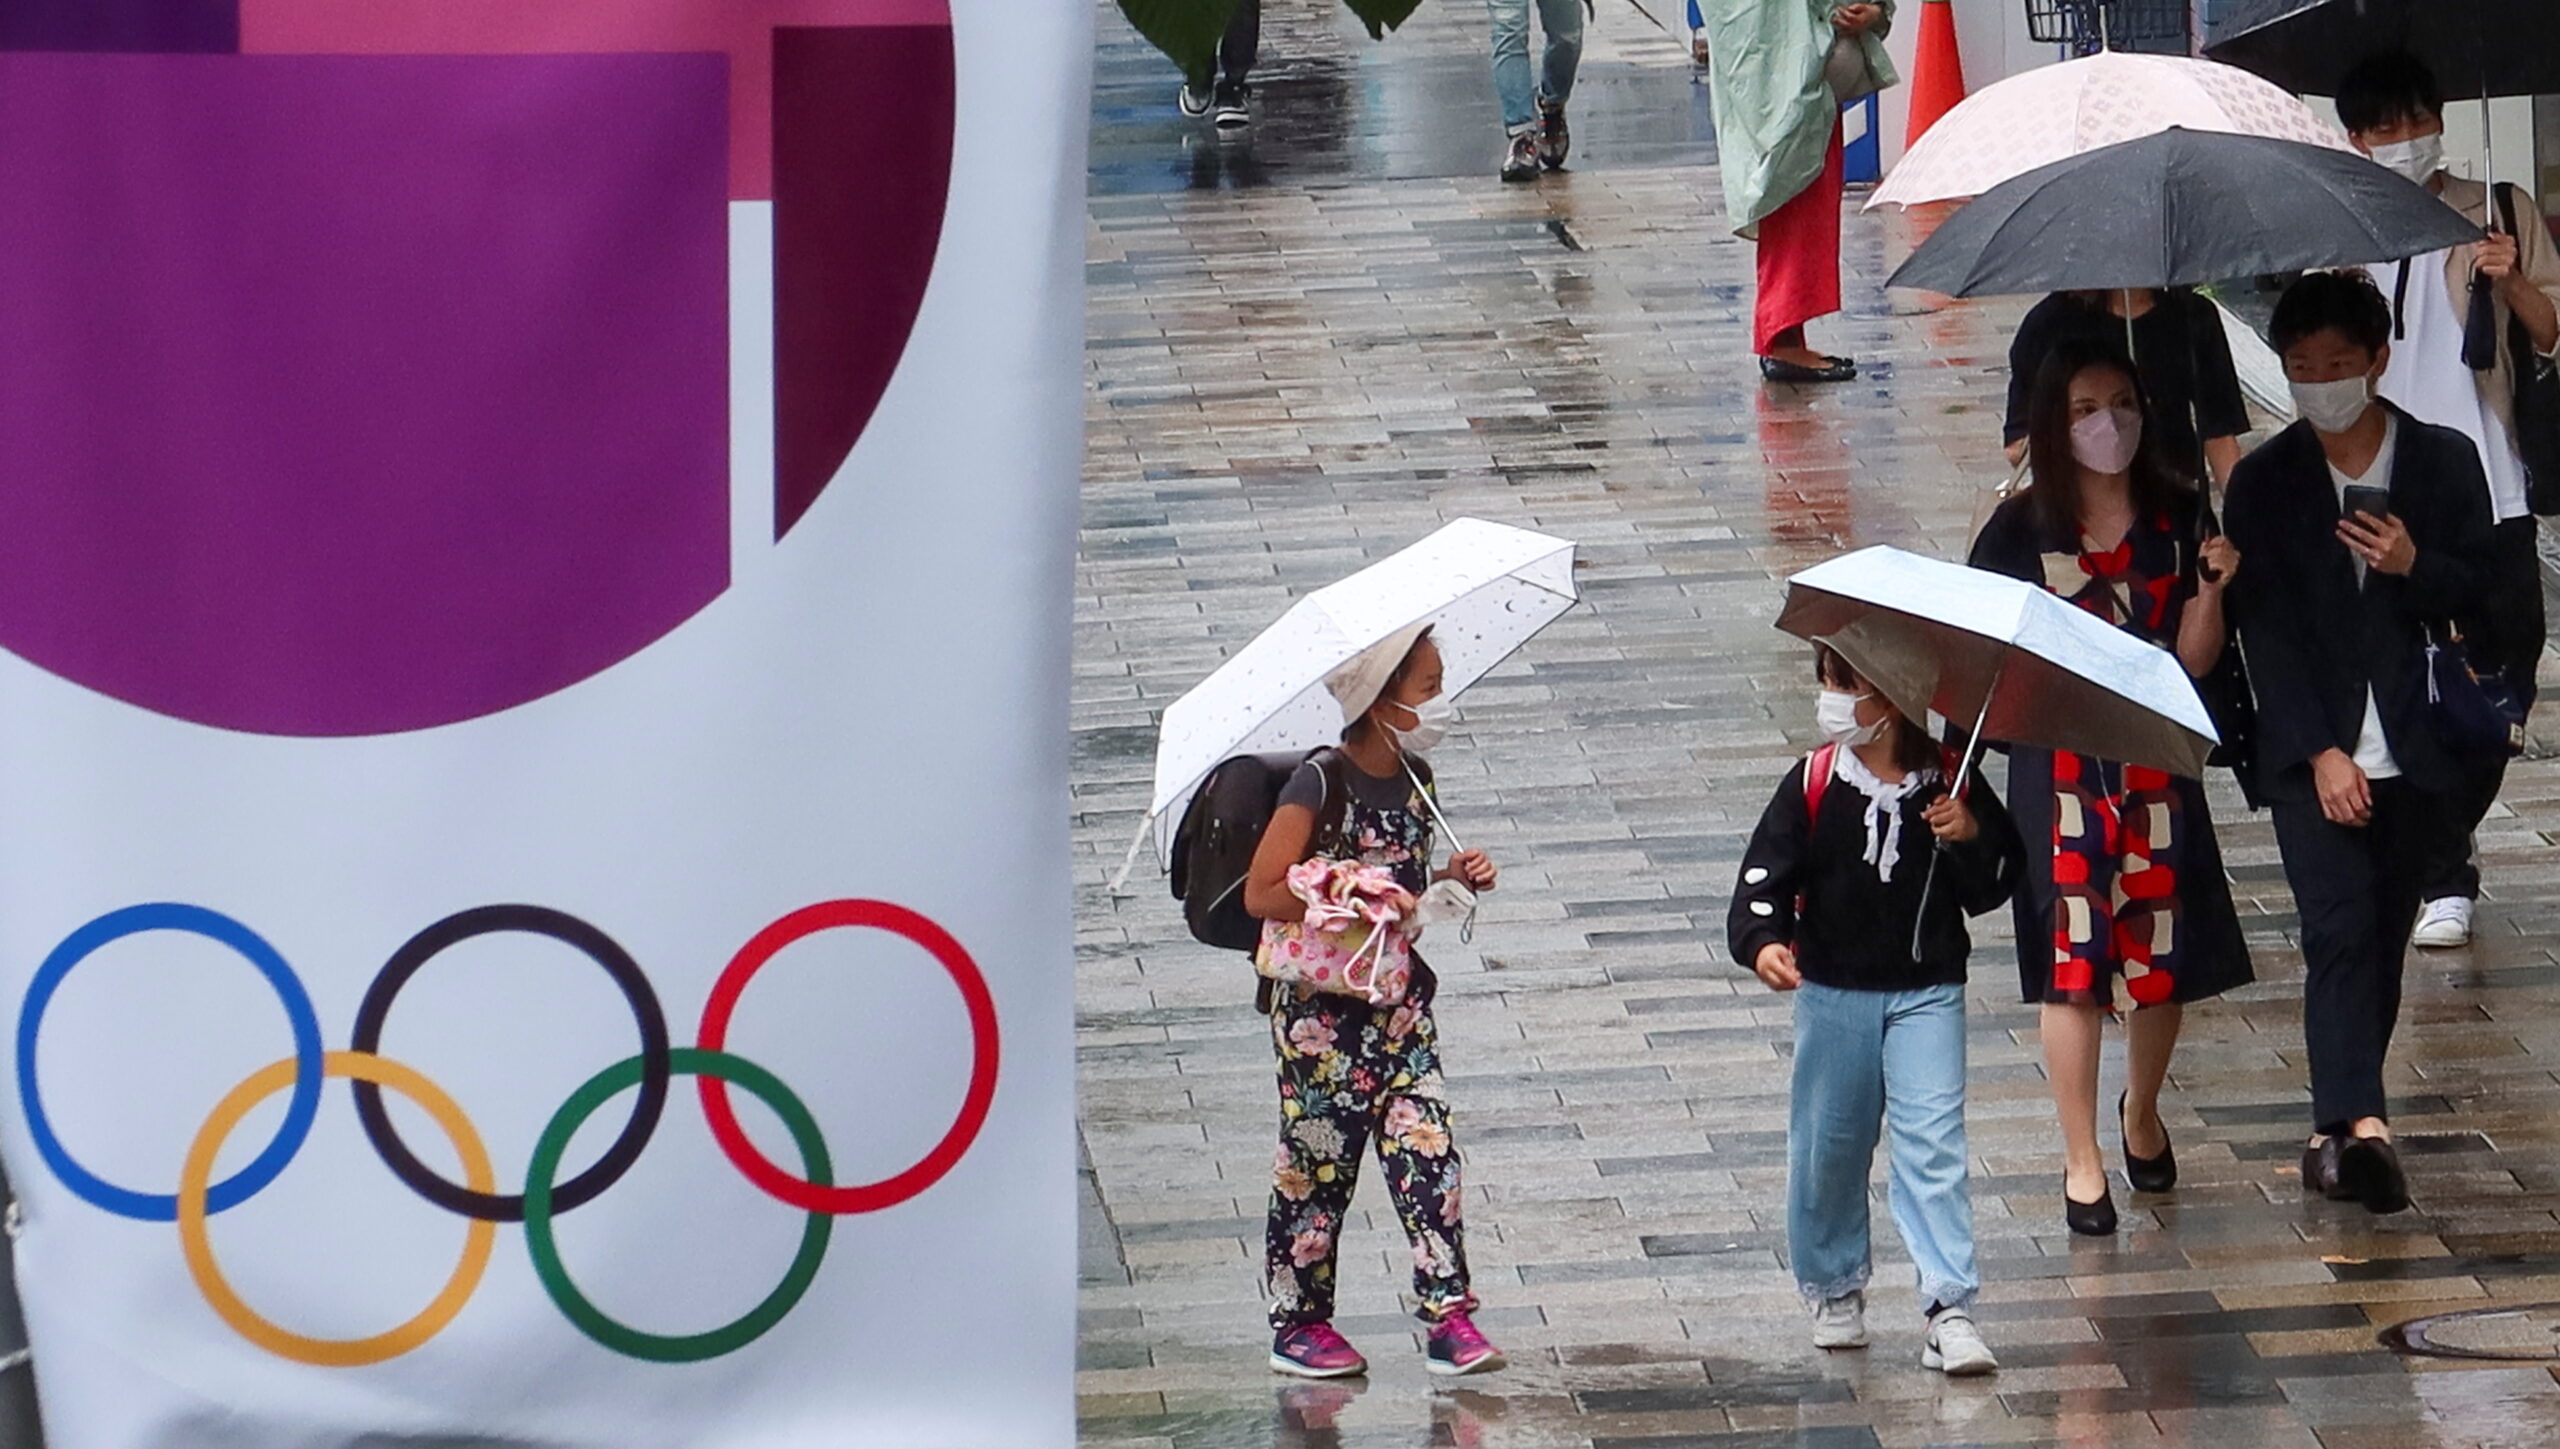 “โอลิมปิก” เดินหน้า เปิดประตูให้ผู้ชมเข้าดูการแข่งขันนับหมื่น – ต่างประเทศ